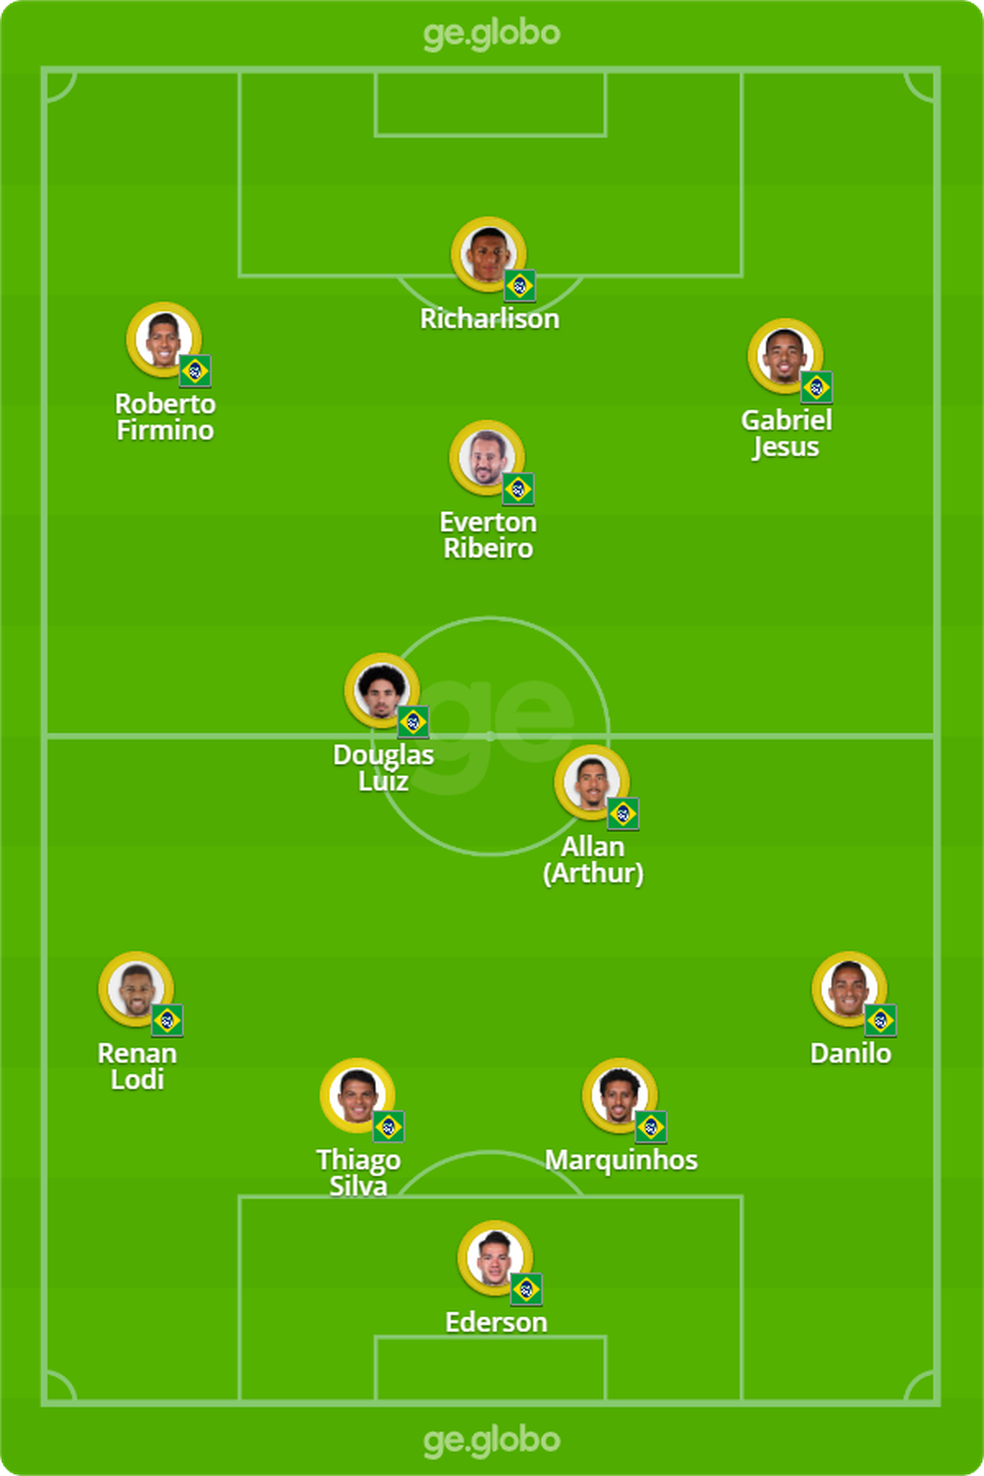 Provável escalação da seleção brasileira contra o Uruguai — Foto: ge